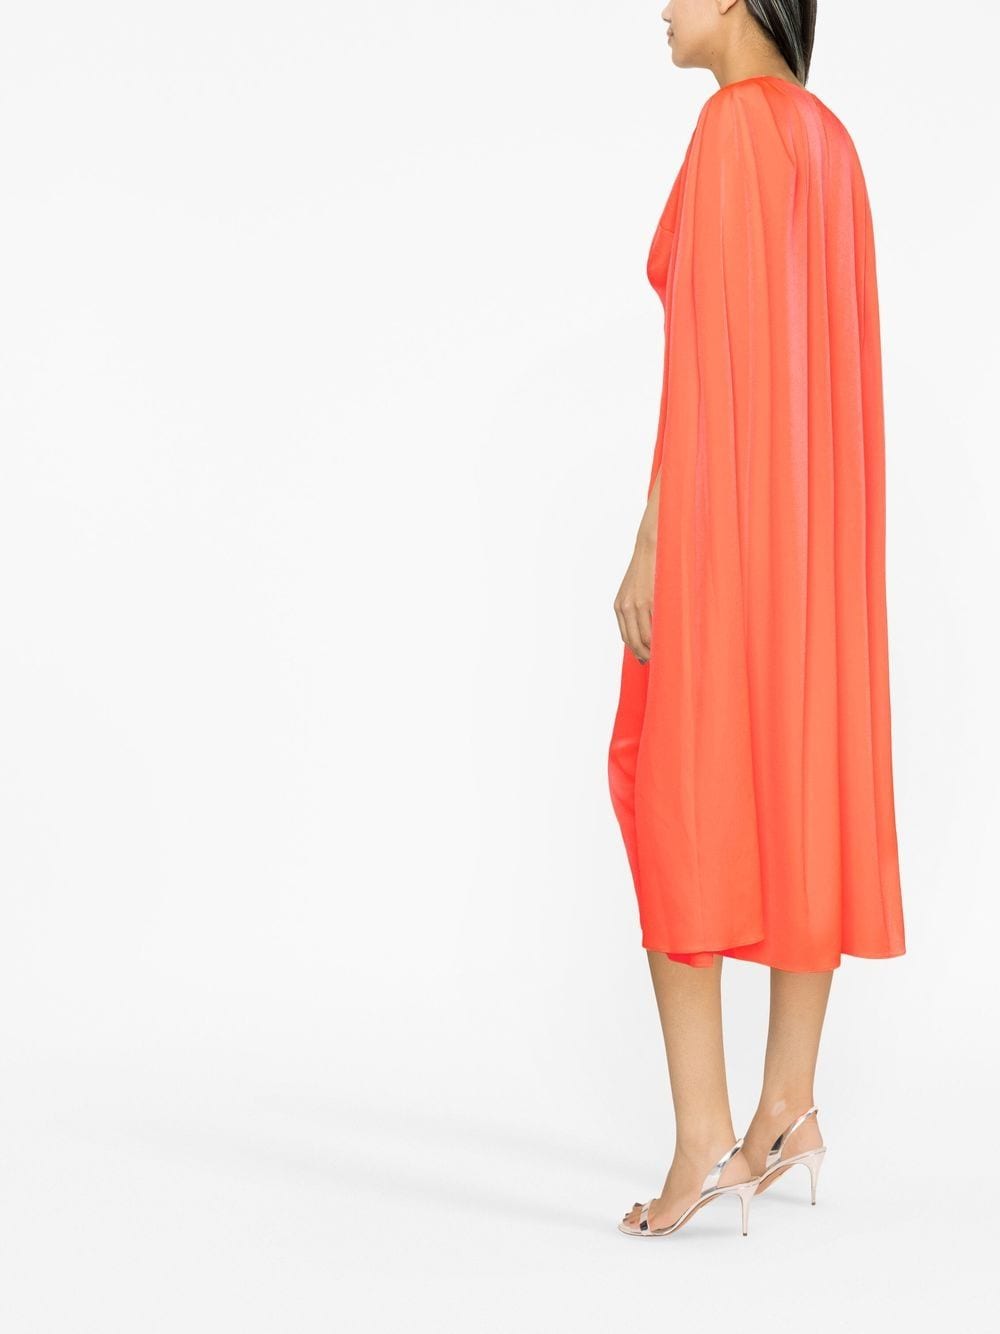 Coral cape design slim-cut dress - women